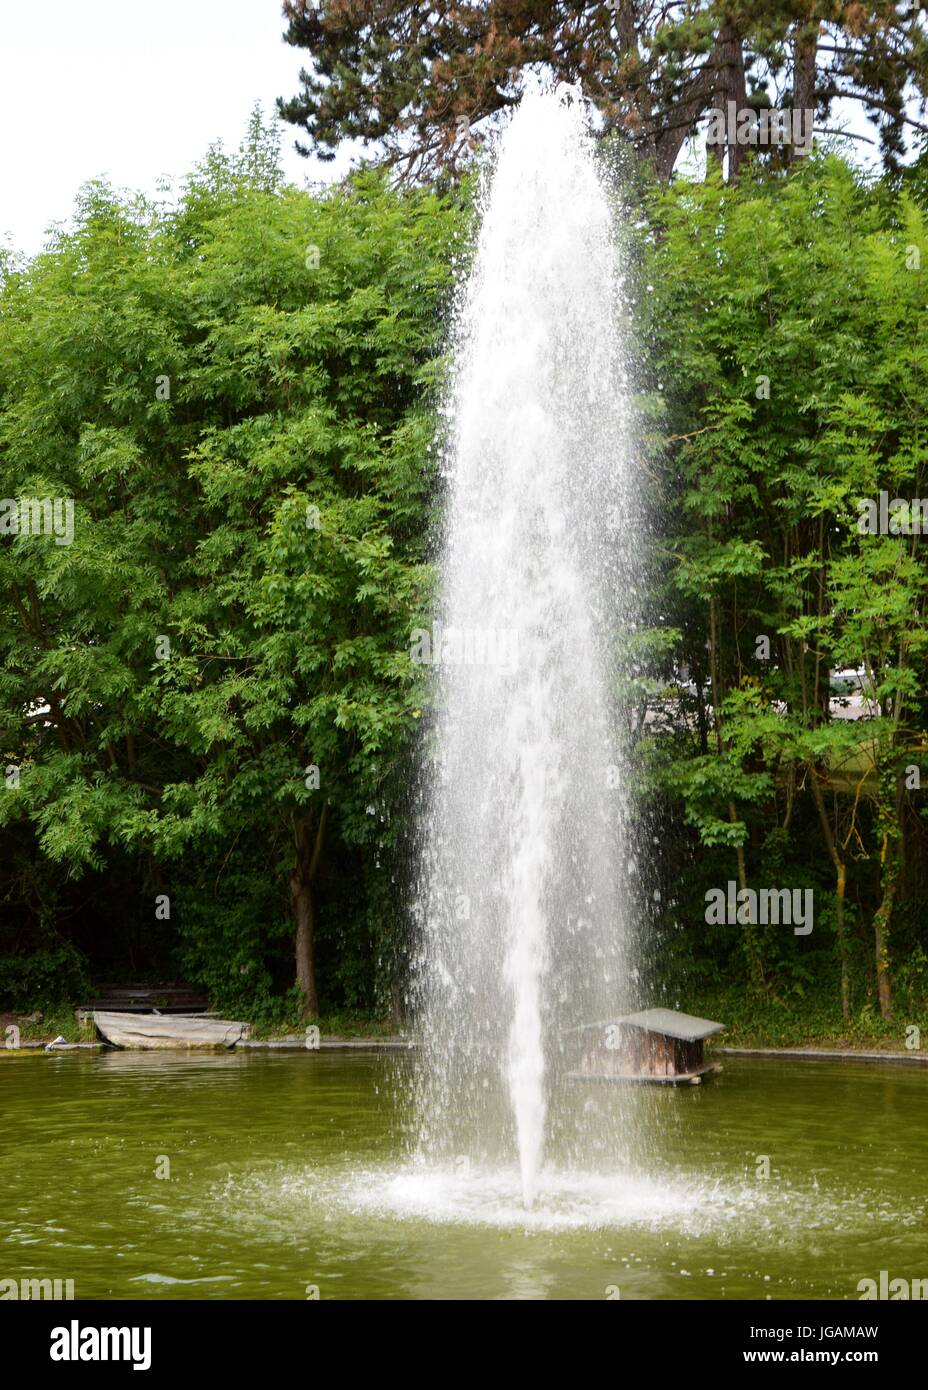 Springbrunnen im Teich, Gartenteich, fountains in a garden pond Stock Photo